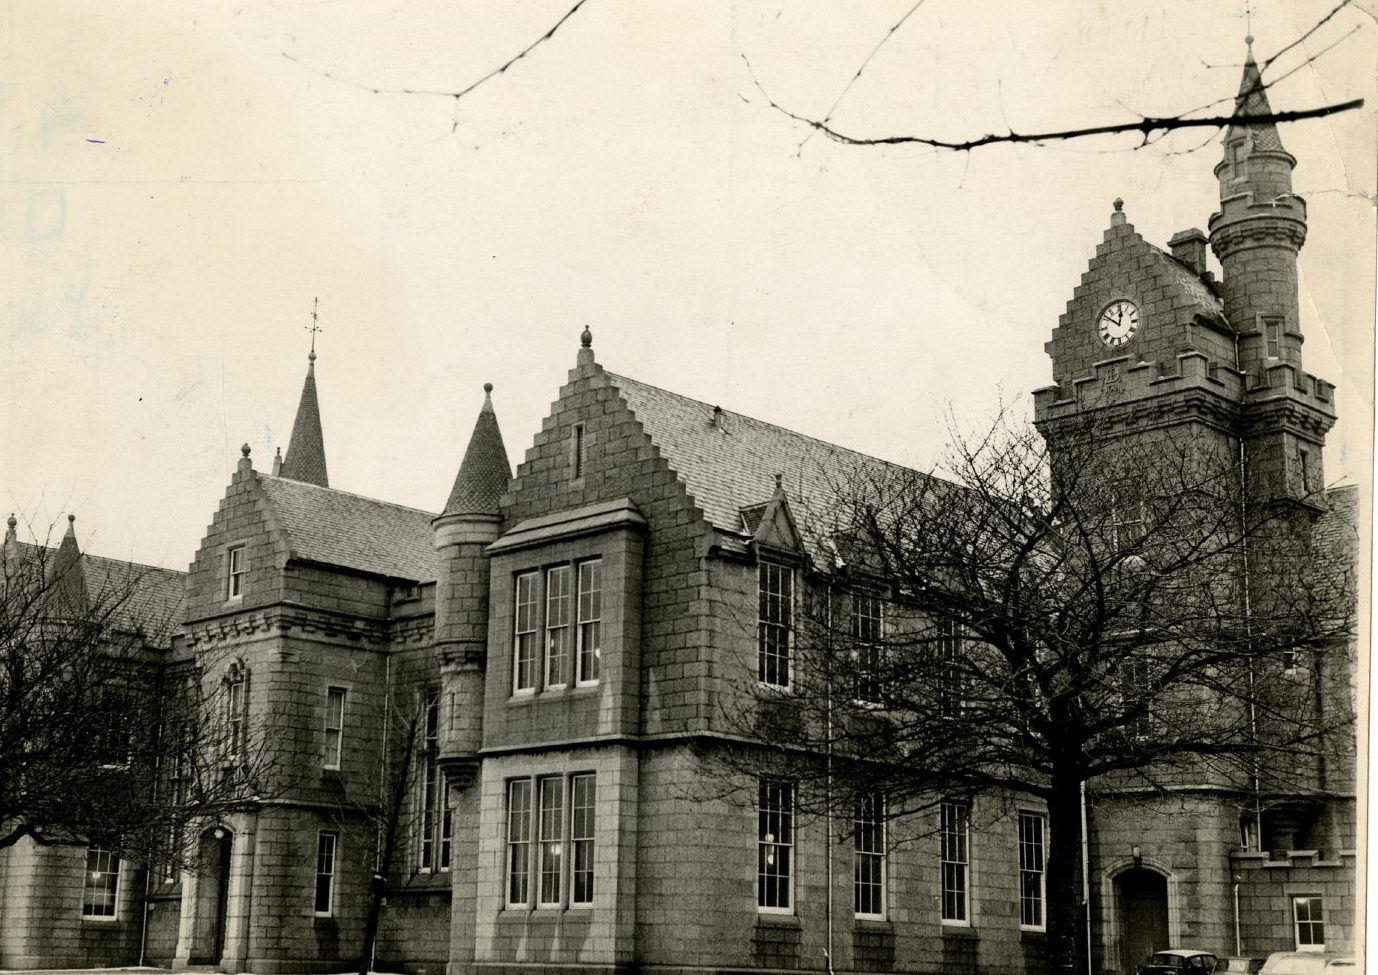 Exterior of Aberdeen Grammar School in 1969.